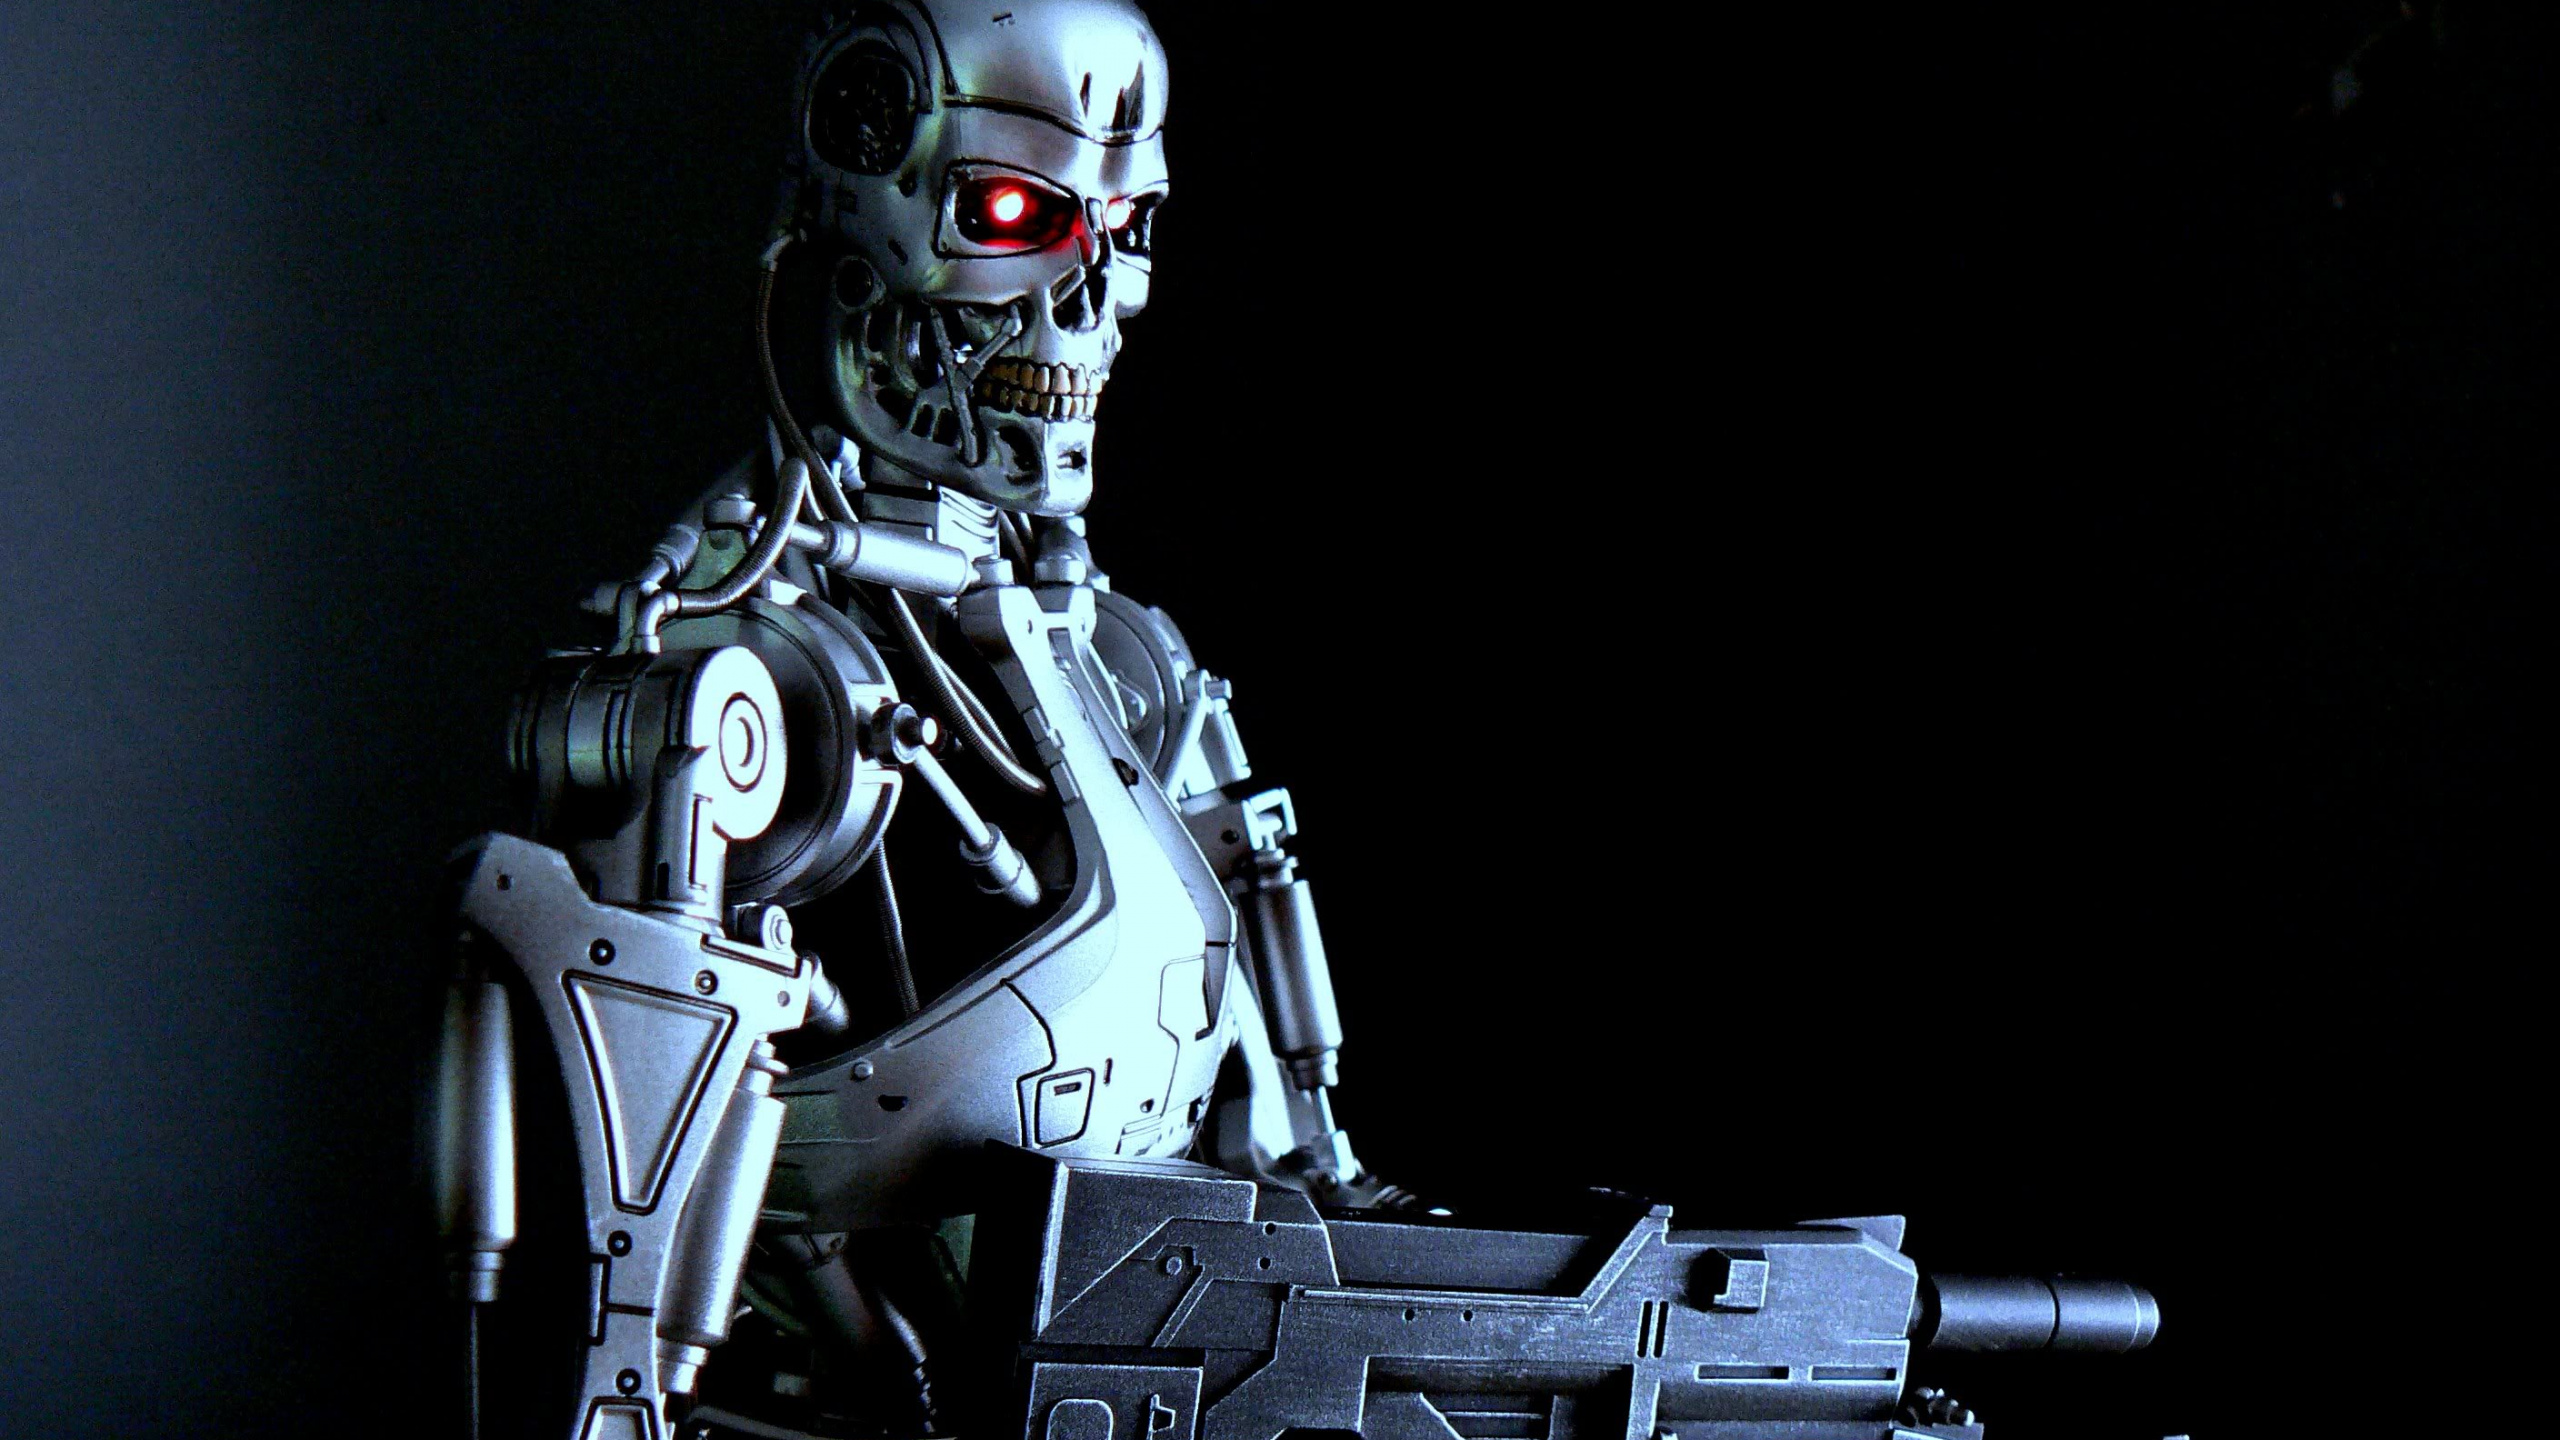 Grauer Roboter Mit Pistole Abbildung. Wallpaper in 2560x1440 Resolution